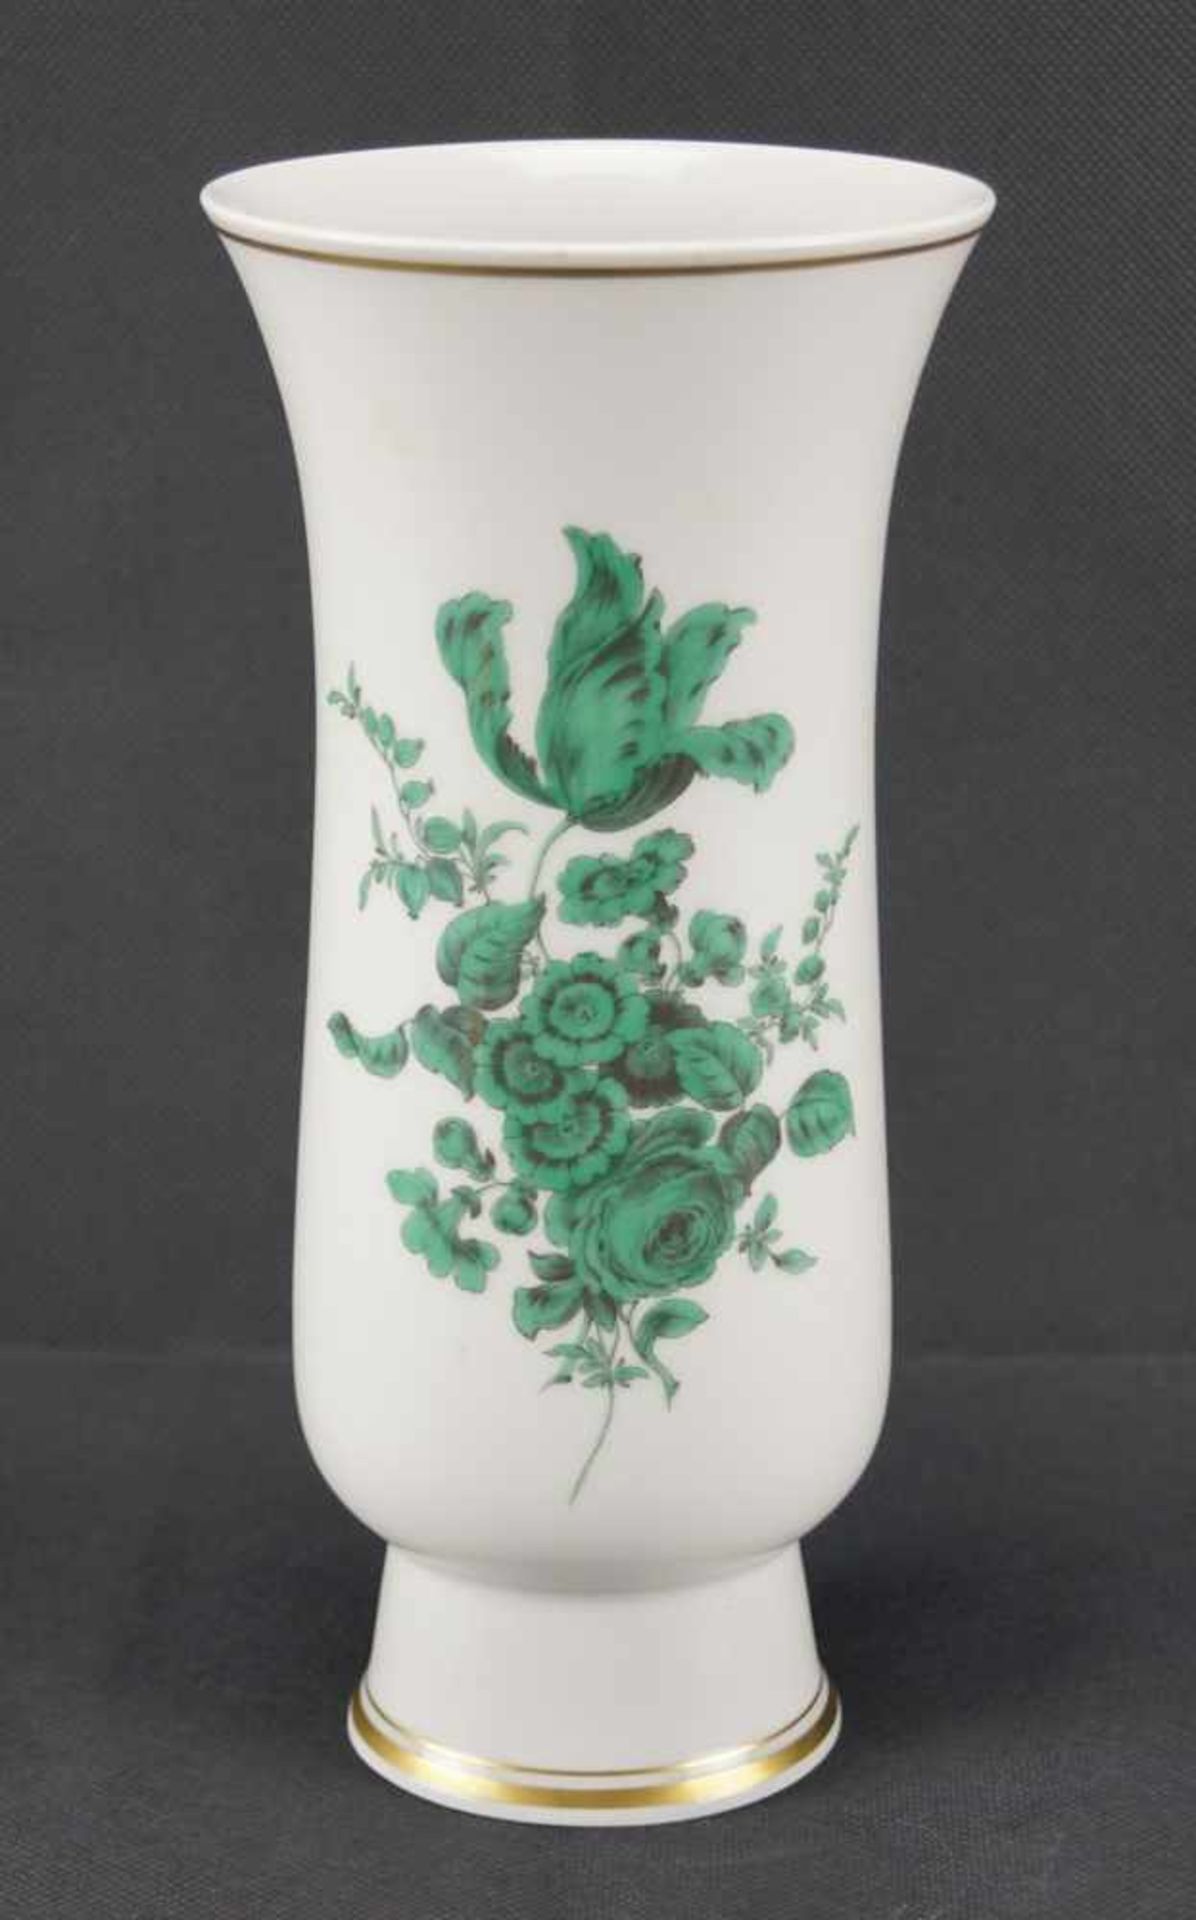 Stangenvase, MeissenSchwertermarke 1. Wahl, kupfergrüne Blumenbukettmalerei, Goldrand, Höhe 24,5 cm,